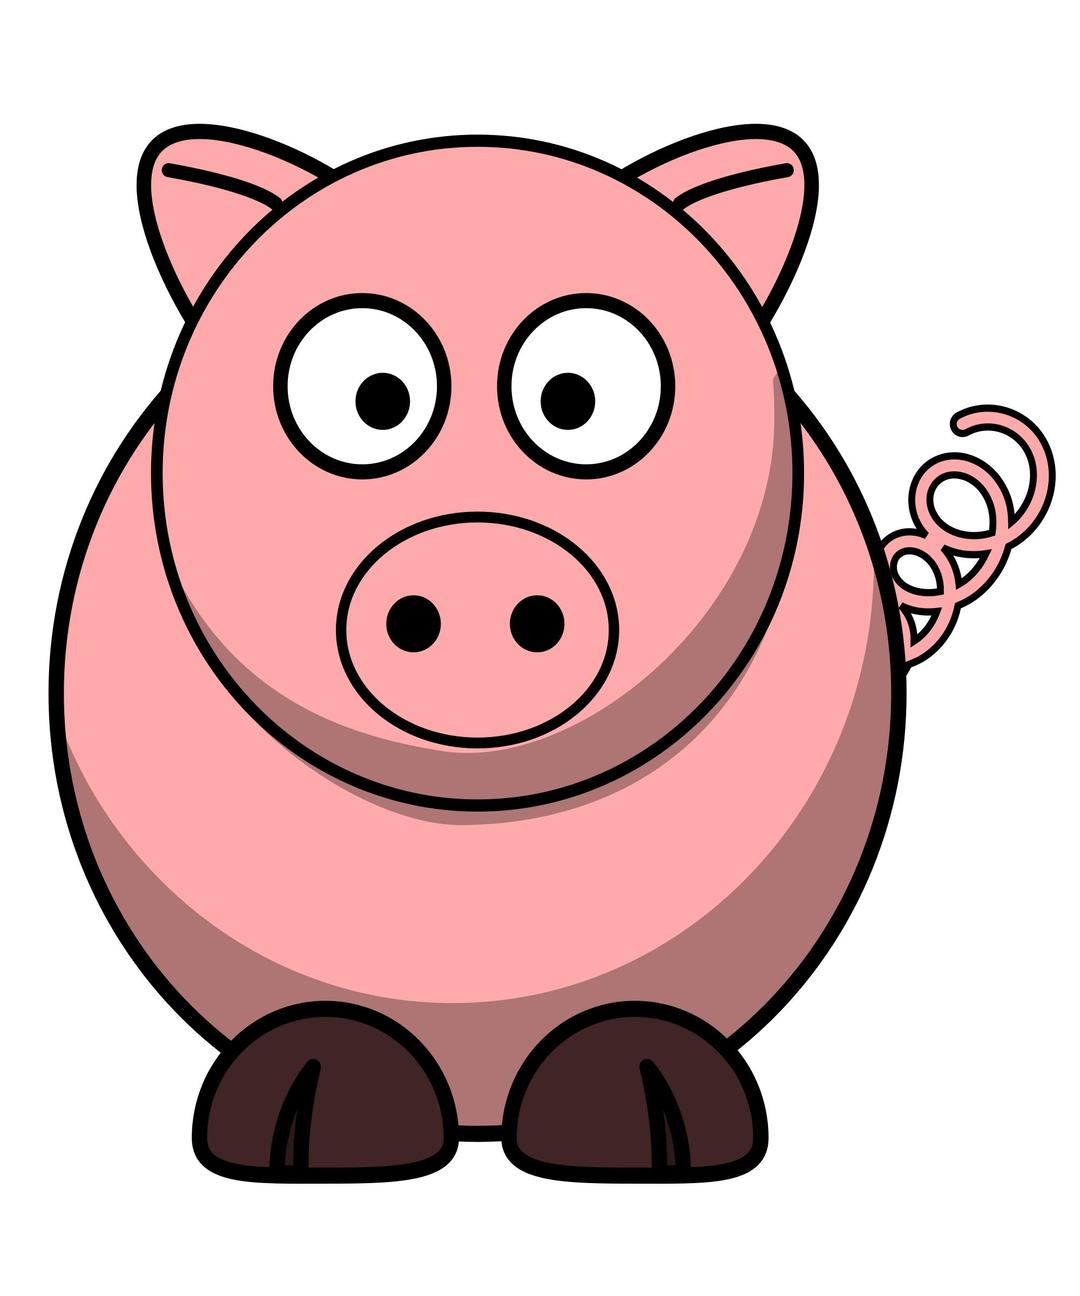 Pig RoundCartoon png transparent